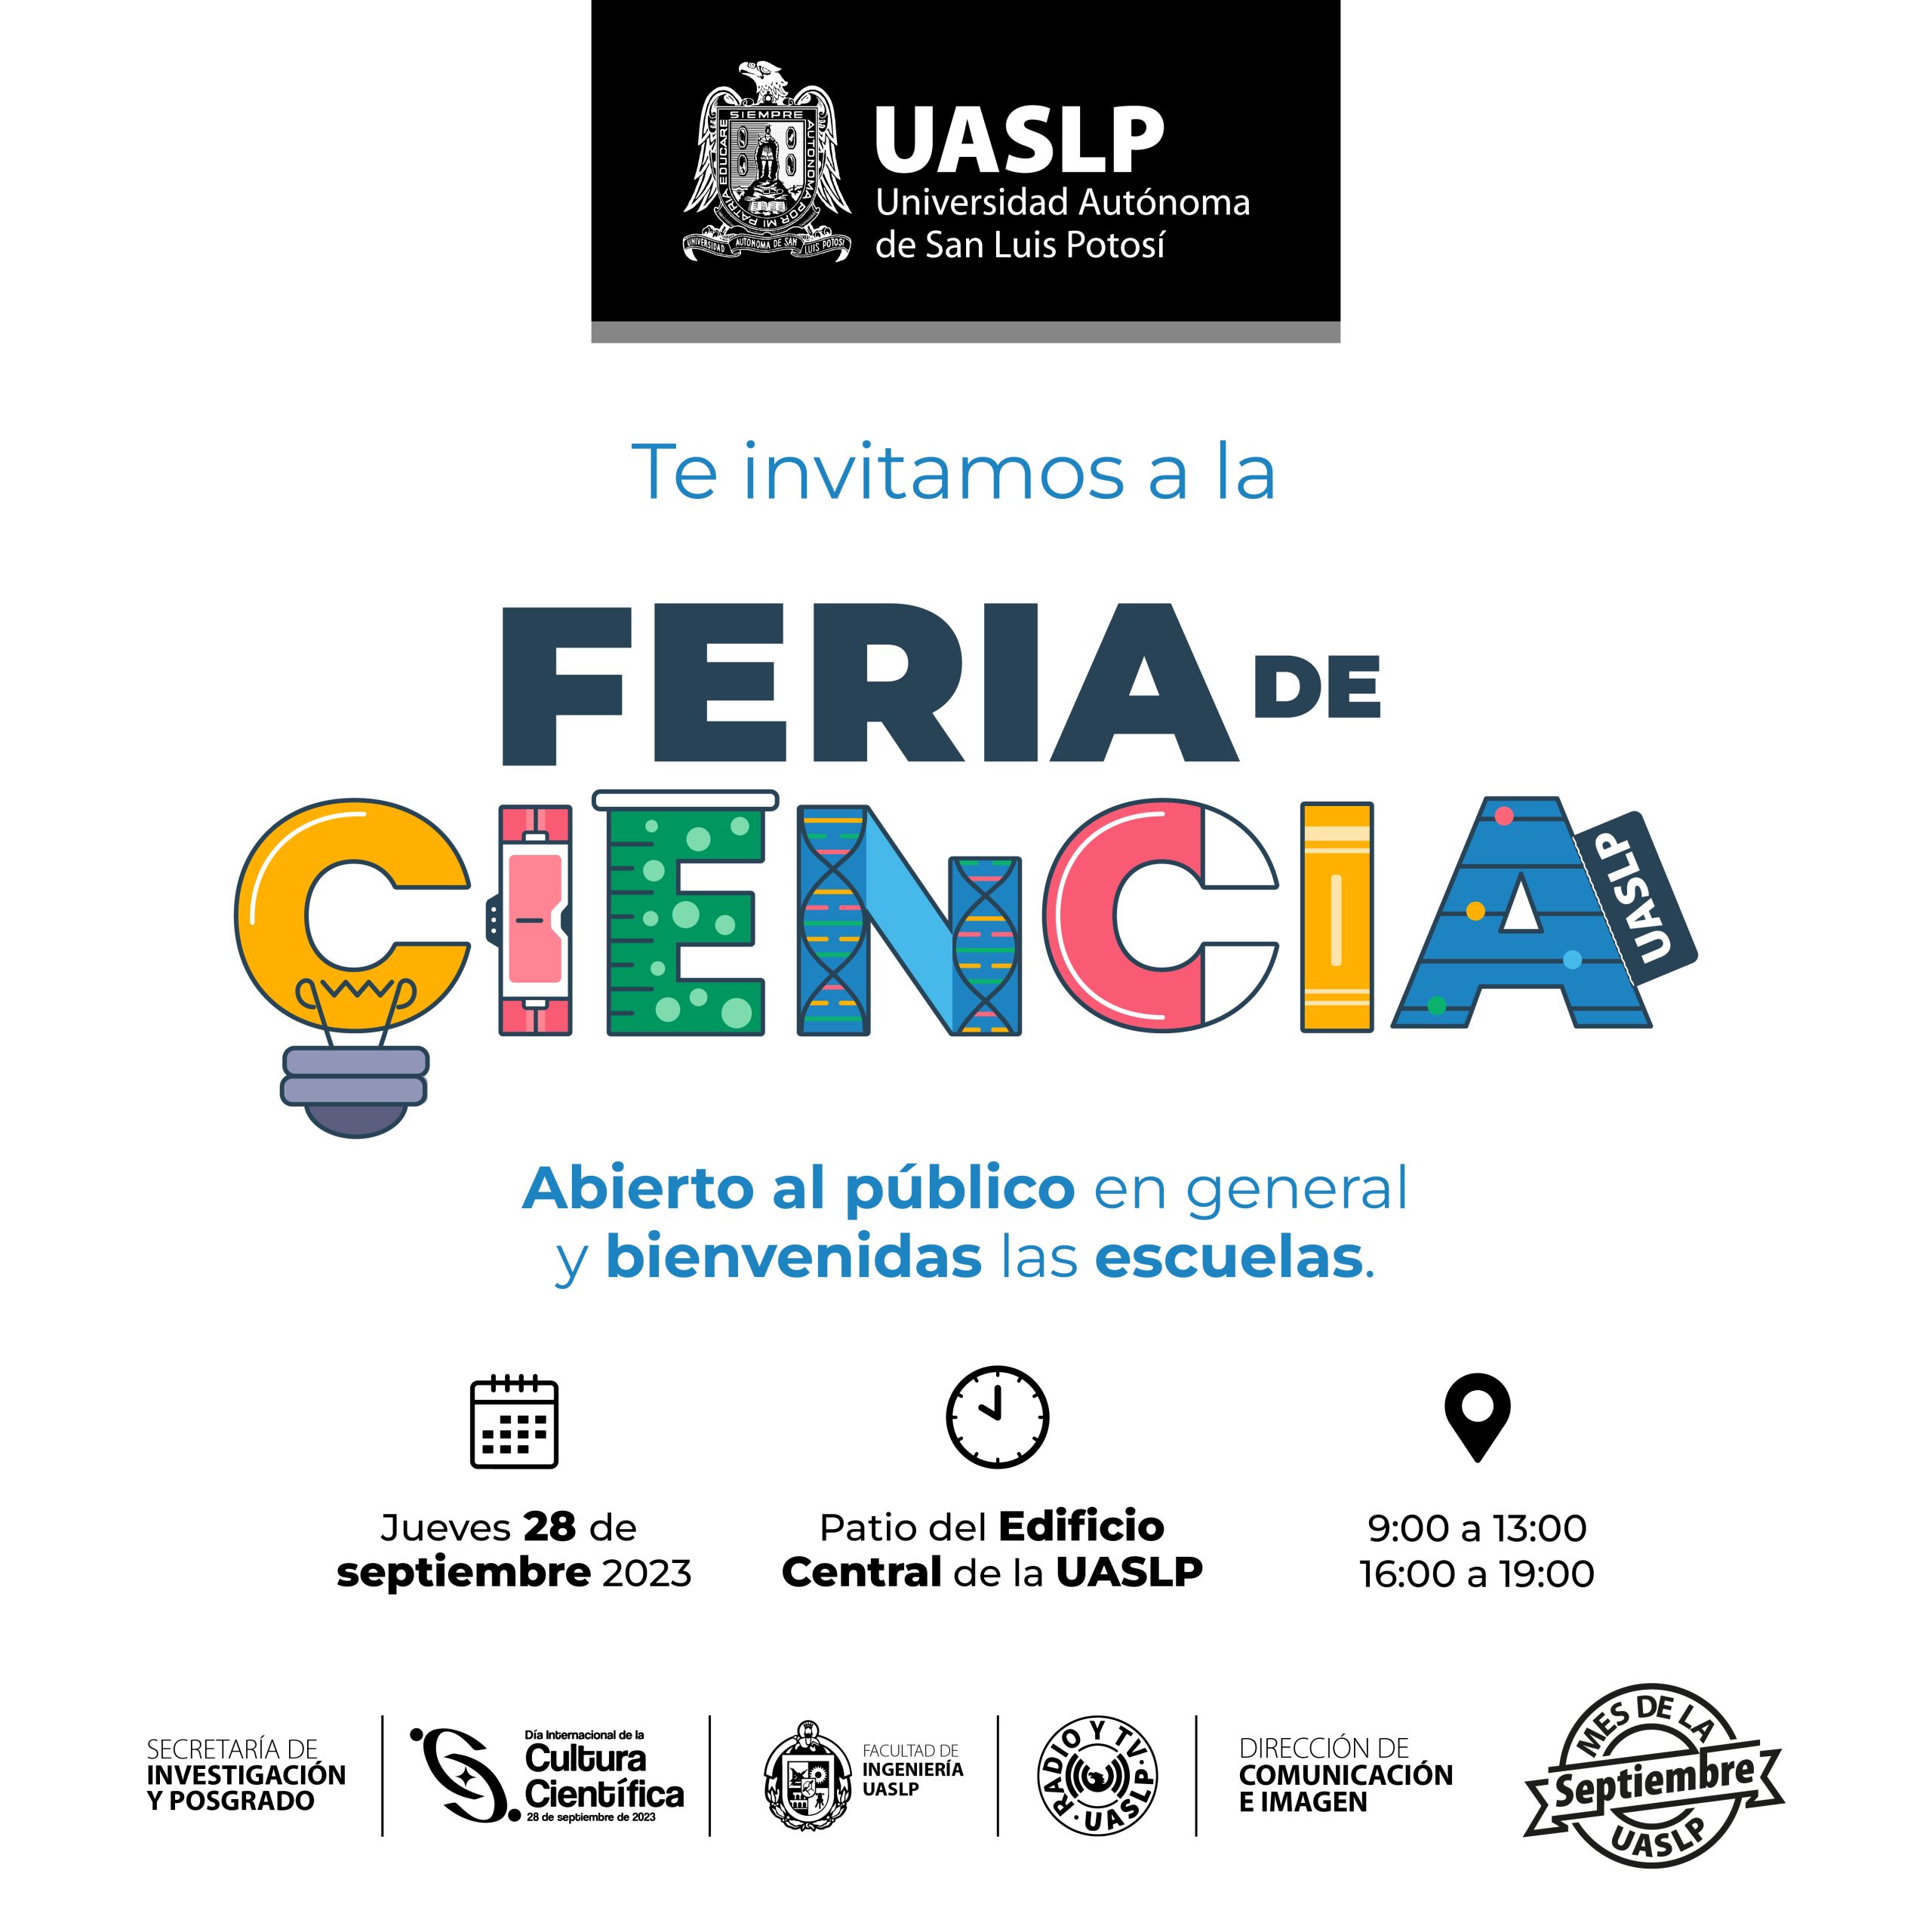 El próximo 28 de septiembre, se celebra el Día Internacional de la Cultura Científica (DICC) y la UASLP, llevará a cabo la Feria de Ciencia